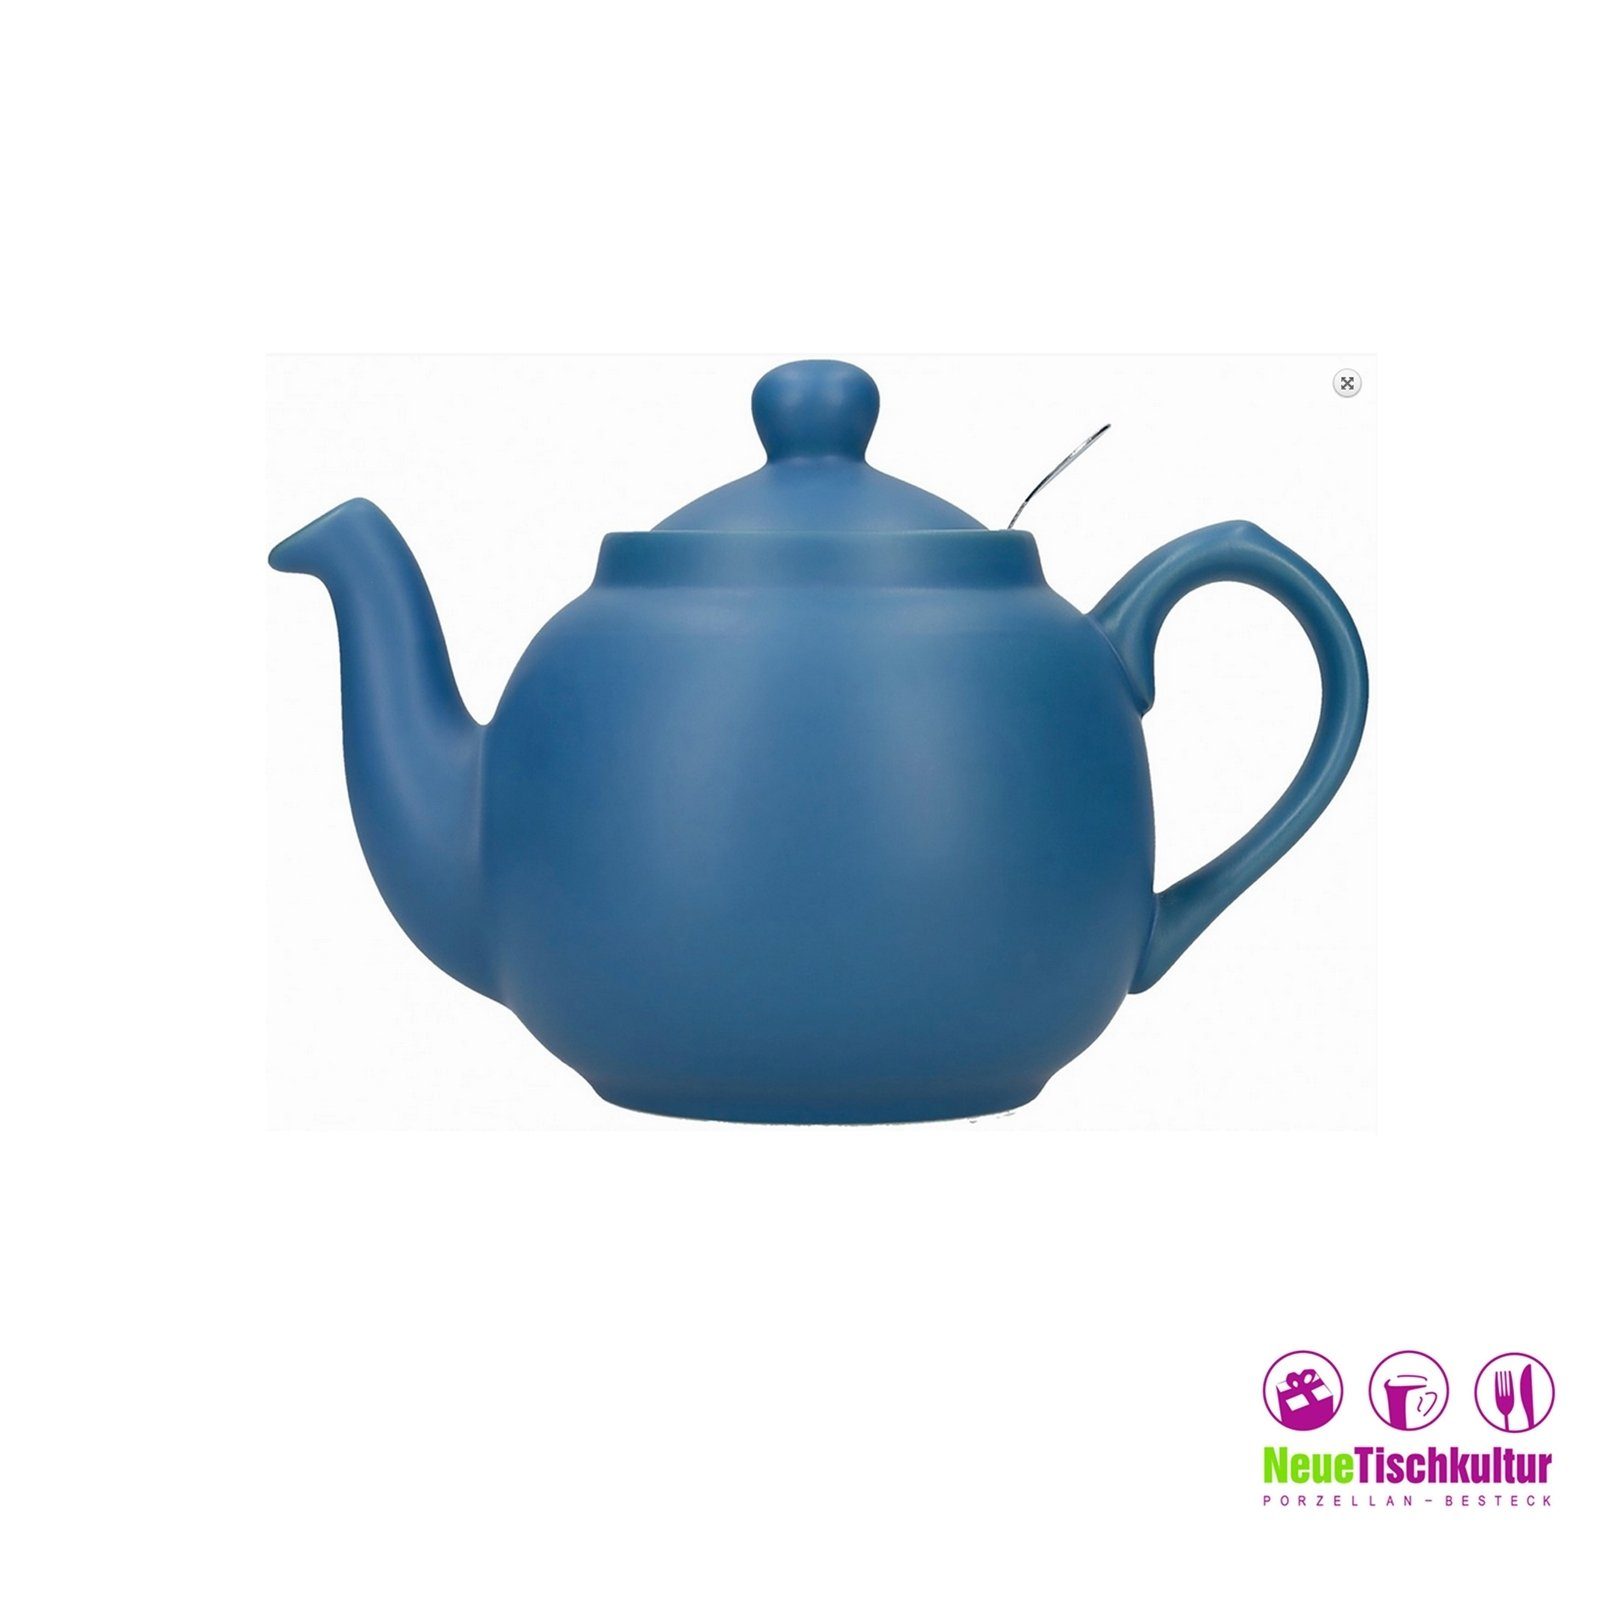 Blau 6 Nordisch l für Keramik/Edelstahlsieb, Neuetischkultur 1.5 Teekanne Teekanne, Tassen,